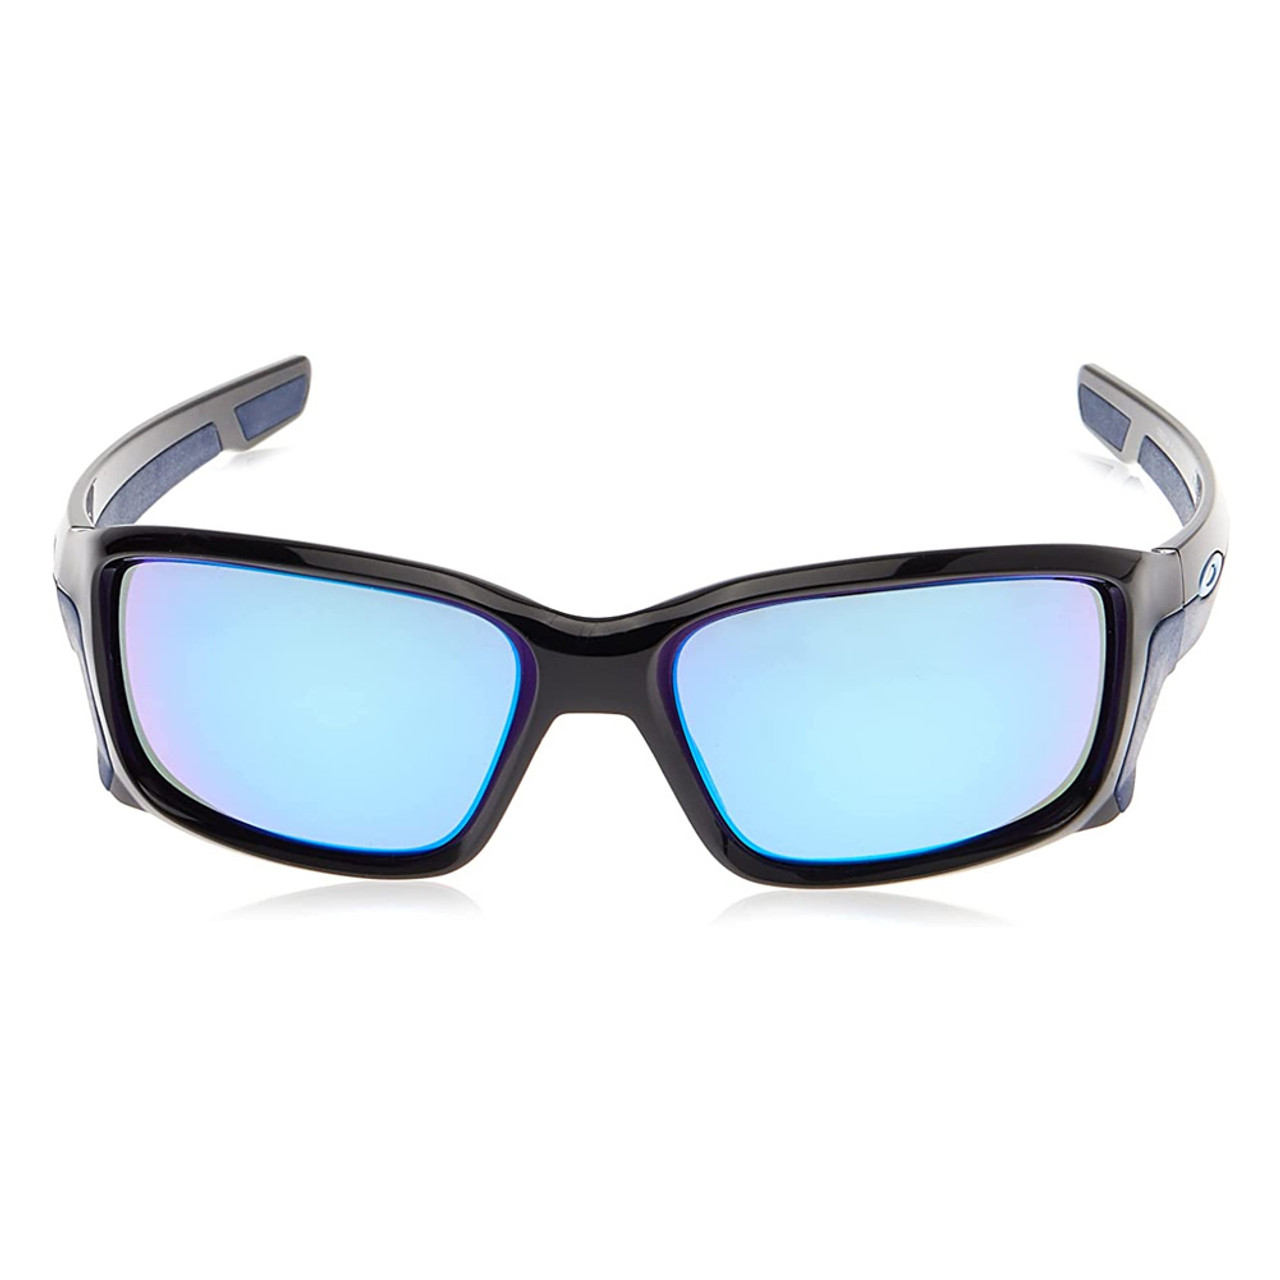 OAKLEY Straightlink Polished Black With Sapphire Iridium Sunglasses  (OO9331-04)